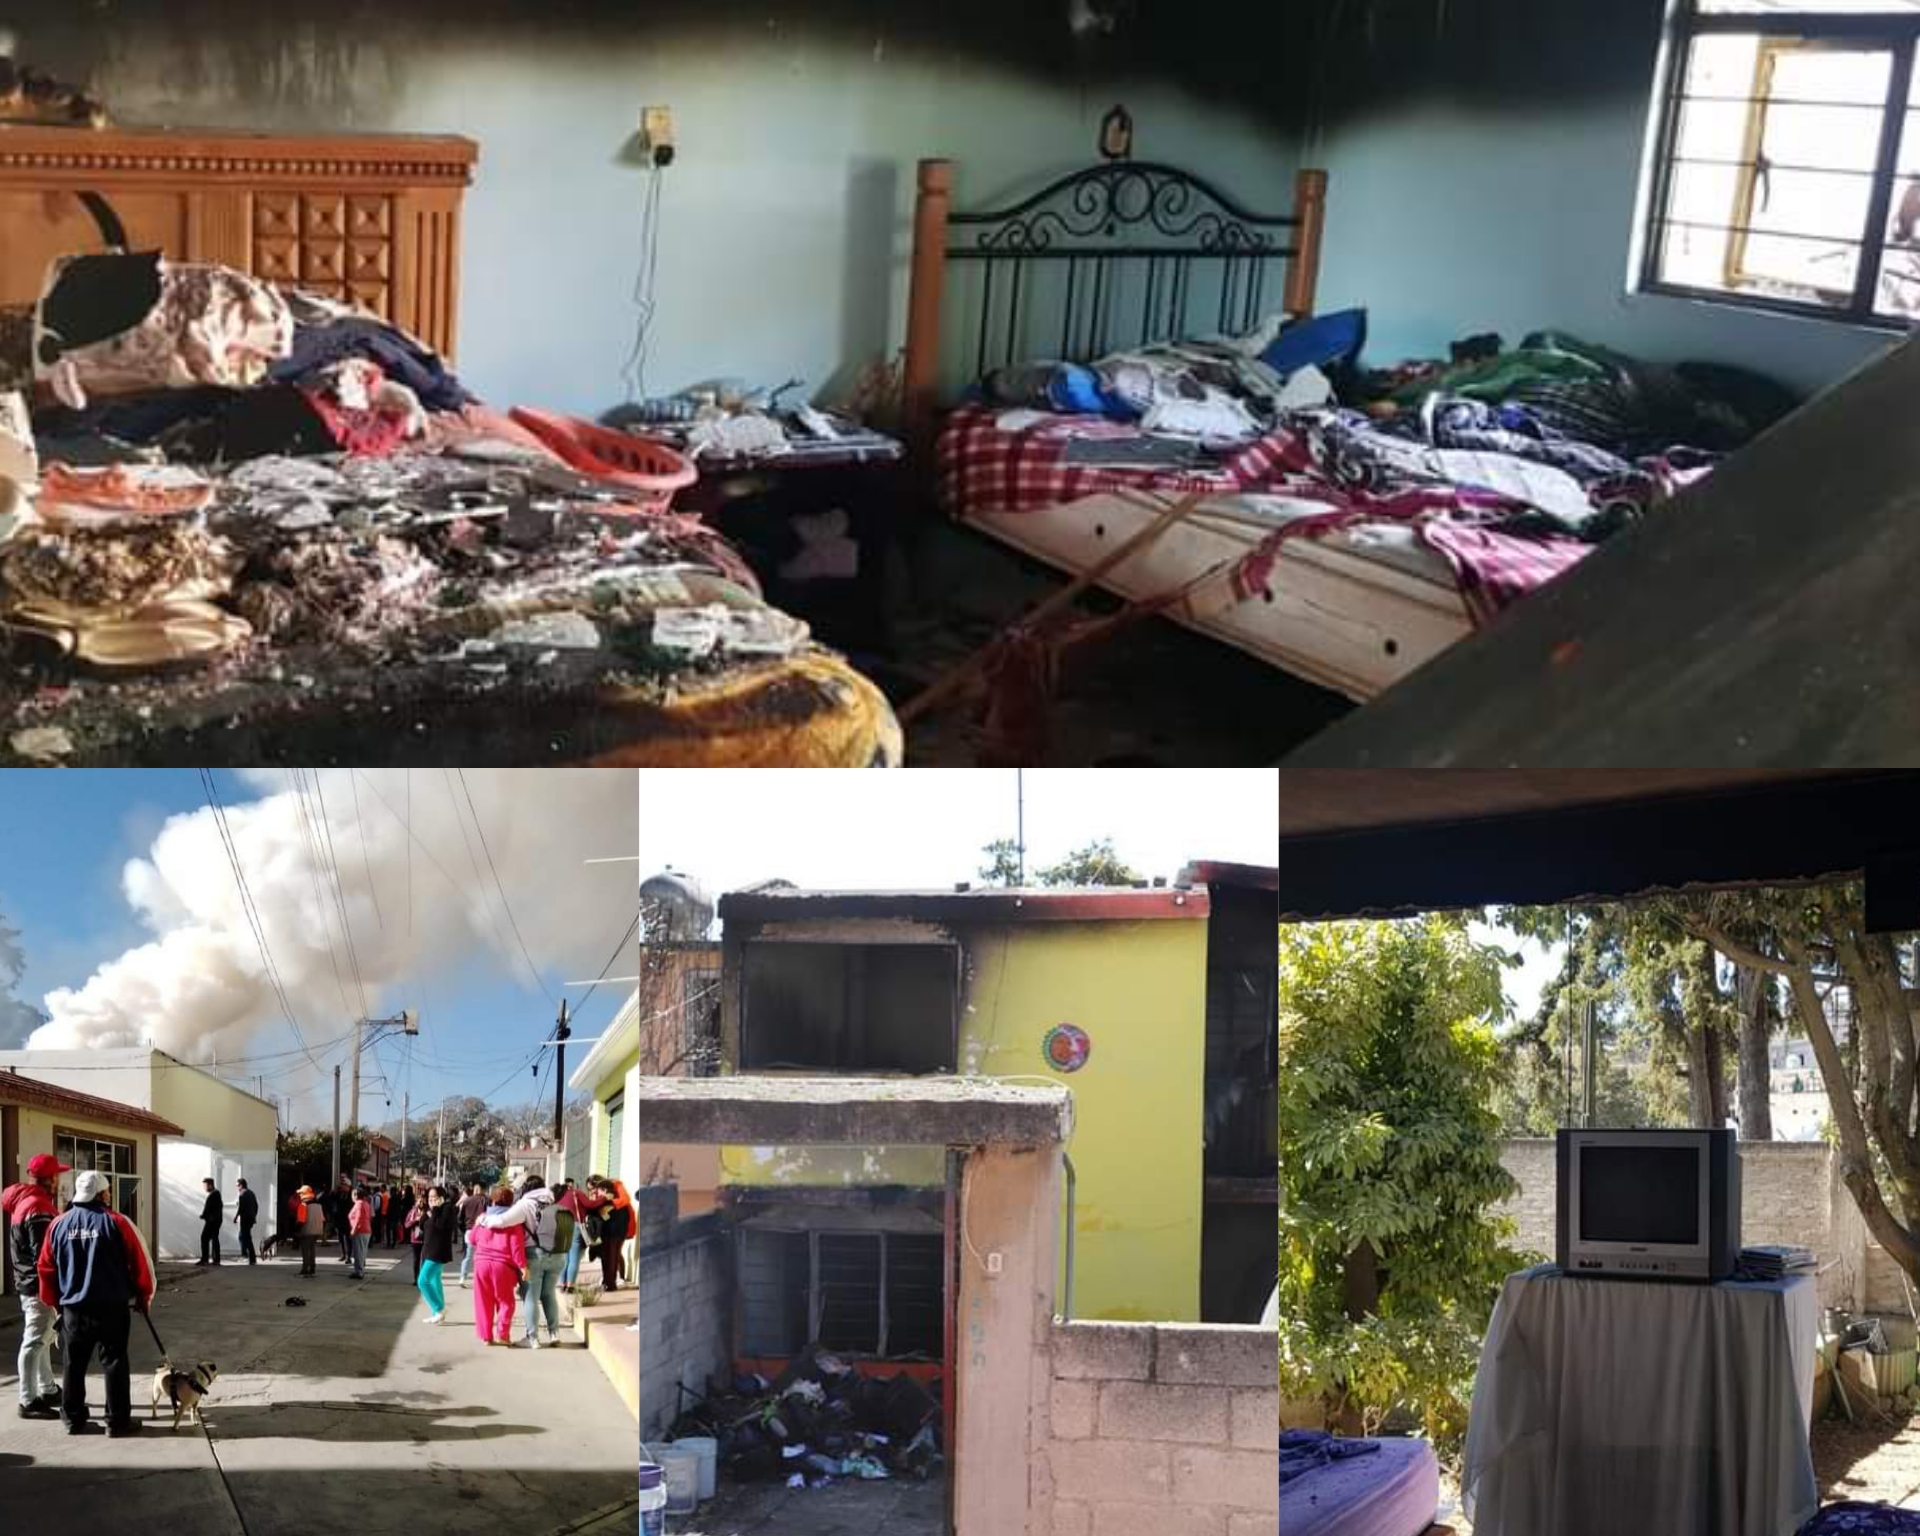 Jovencita muere en incendio en su casa en Nicolás Romero #regionmx 